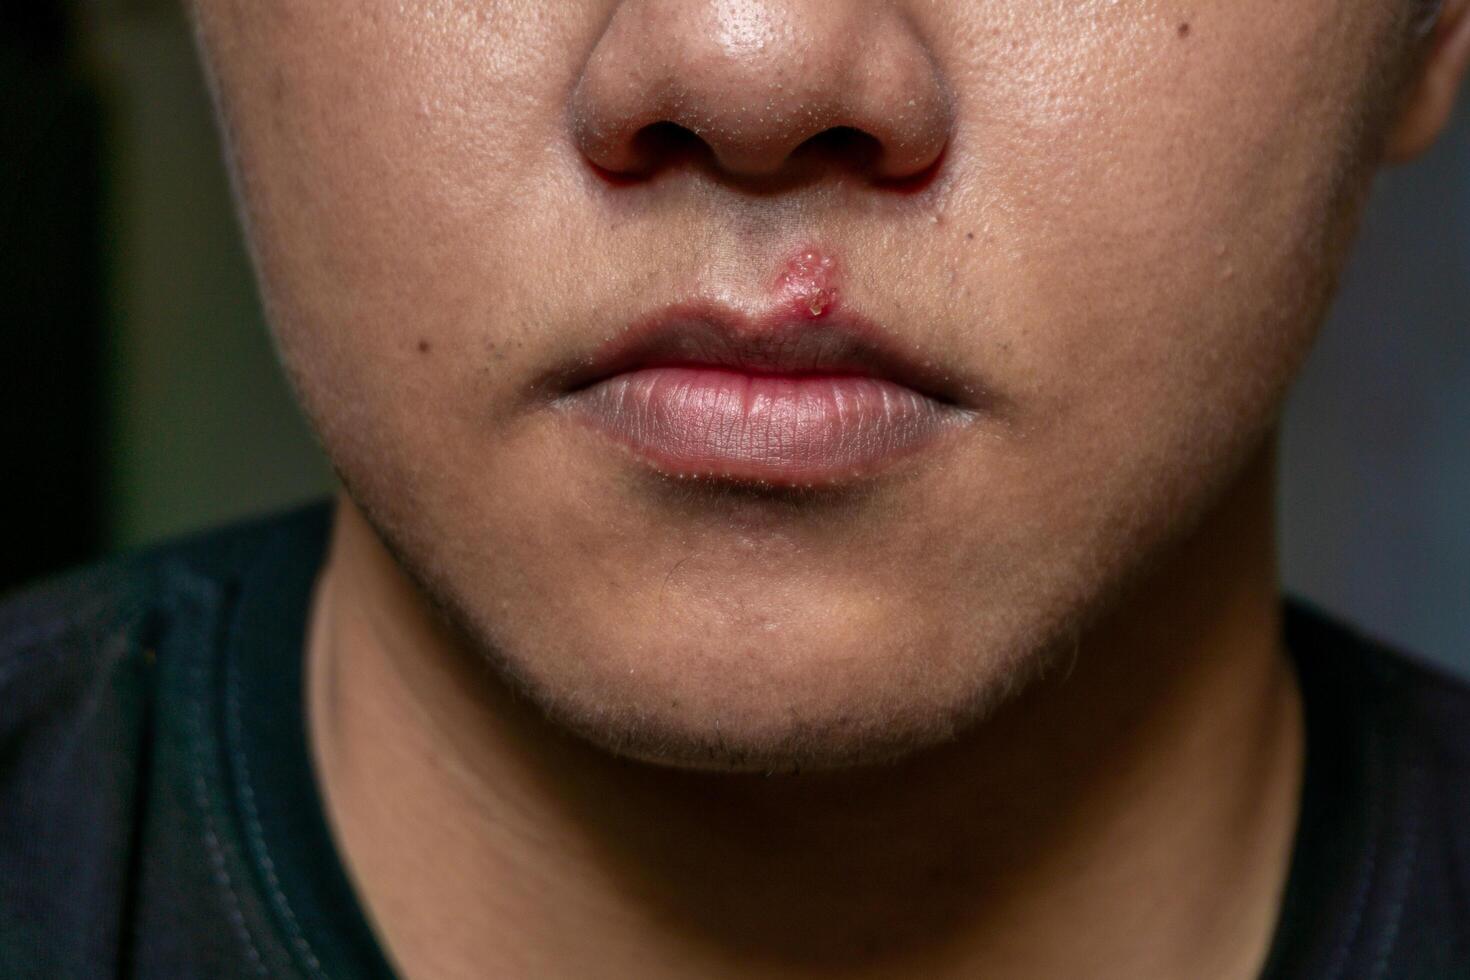 herpes virus och infektion behandling. män mun påverkade förbi herpes blåsor foto